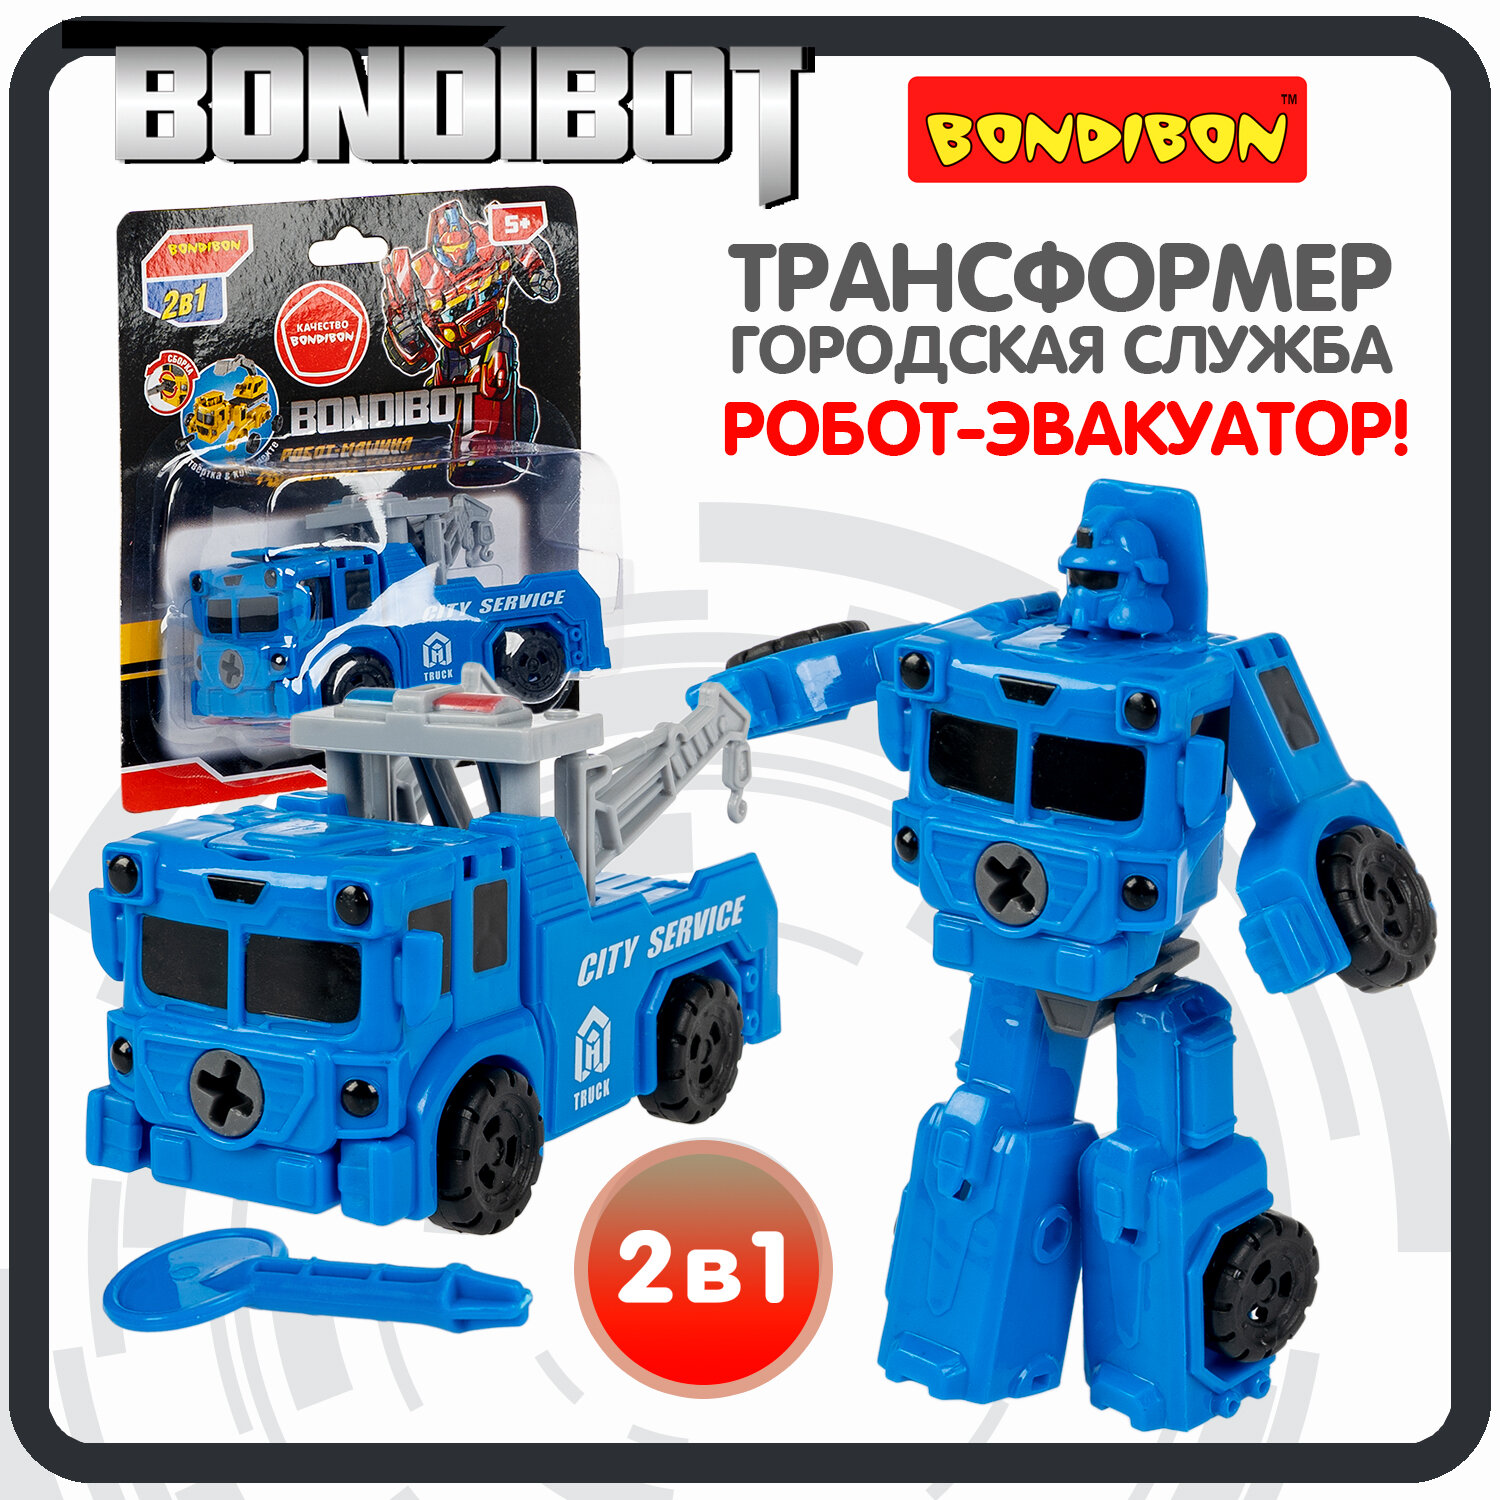 Трансформер робот-машина городской службы, 2в1 BONDIBOT Bondibon, эвакуатор, цвет синий, CRD13,5х11,